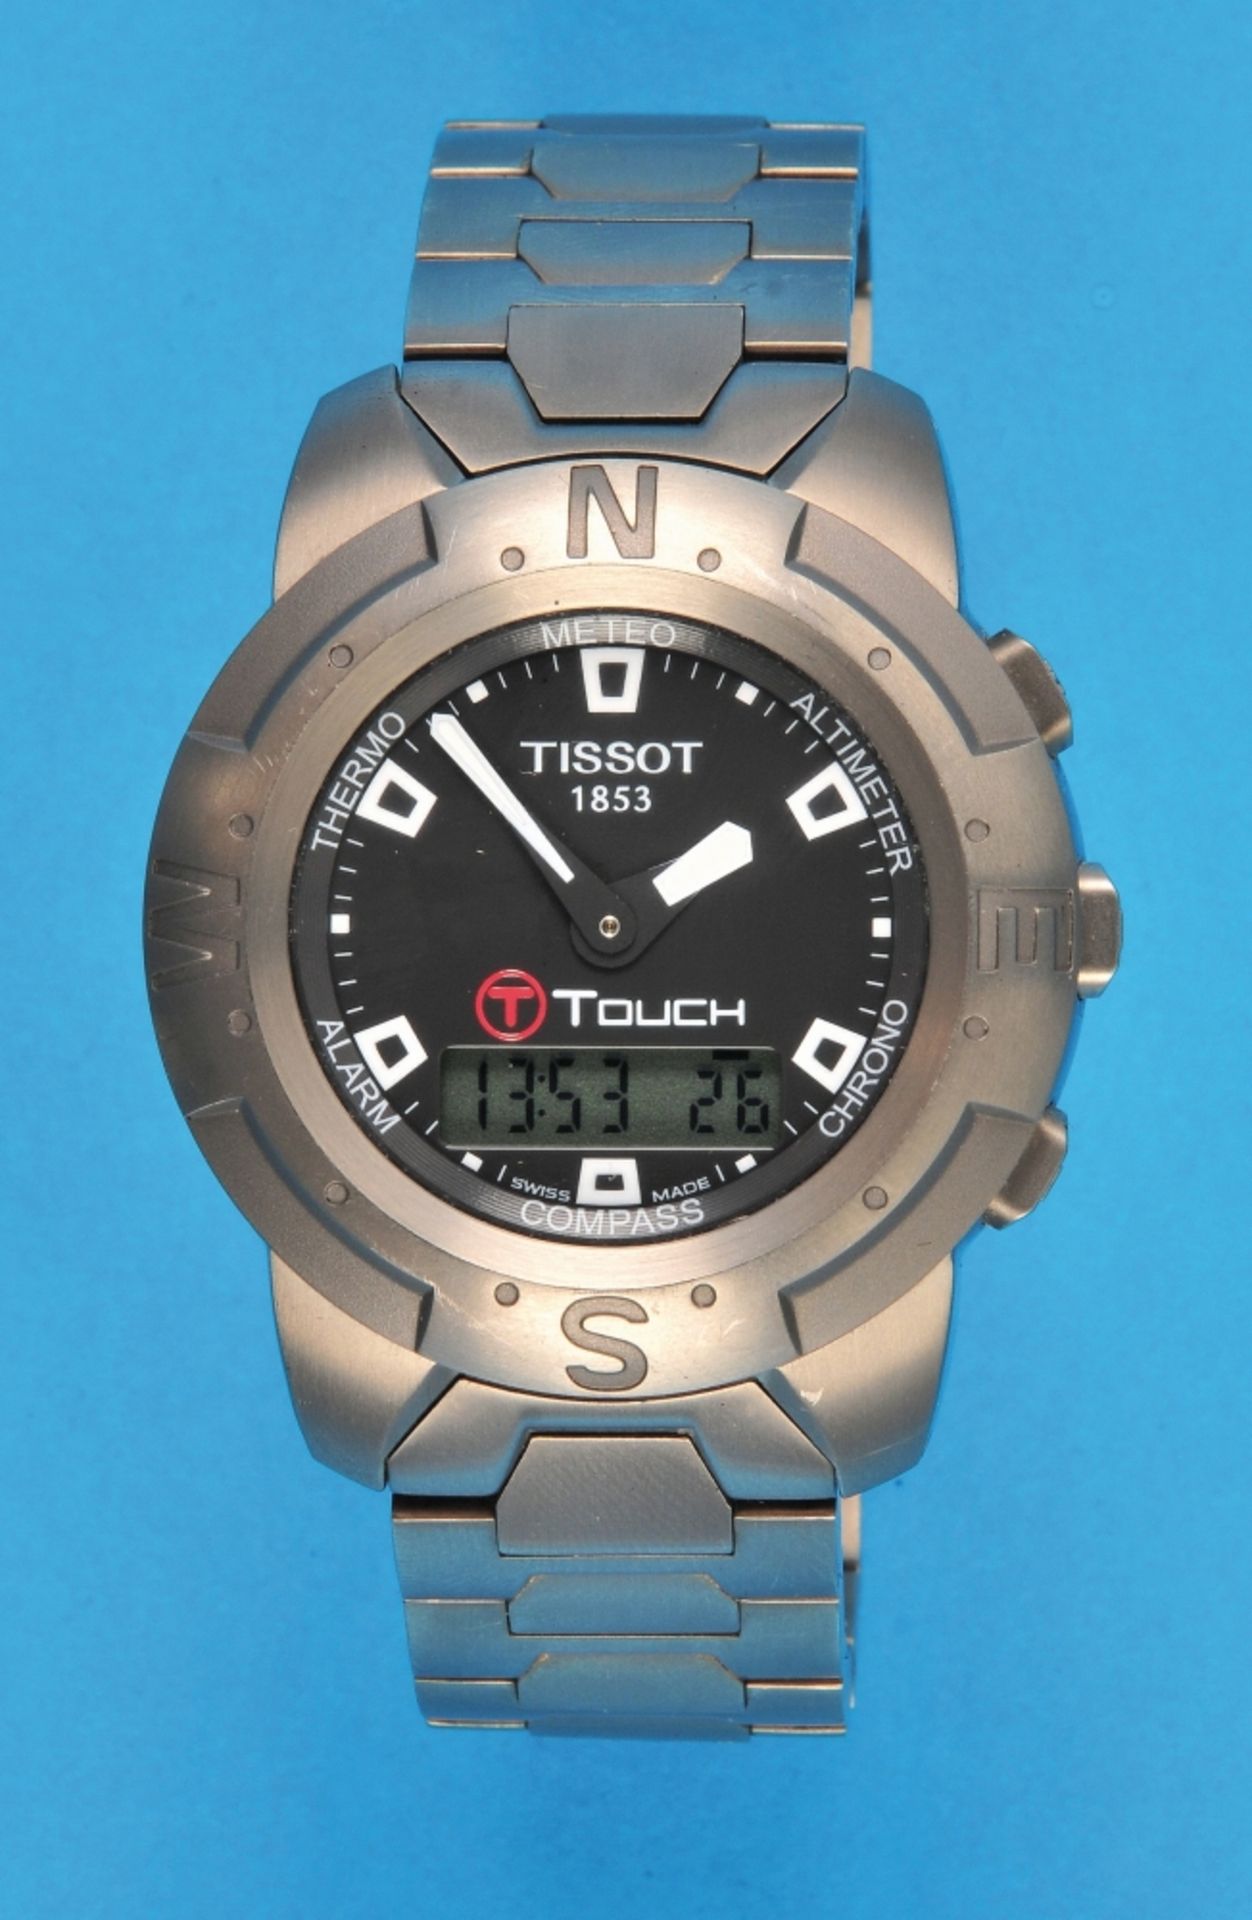 Tissot 1853 "Touch" Titanium- Wristwatch with titanium link bracelet